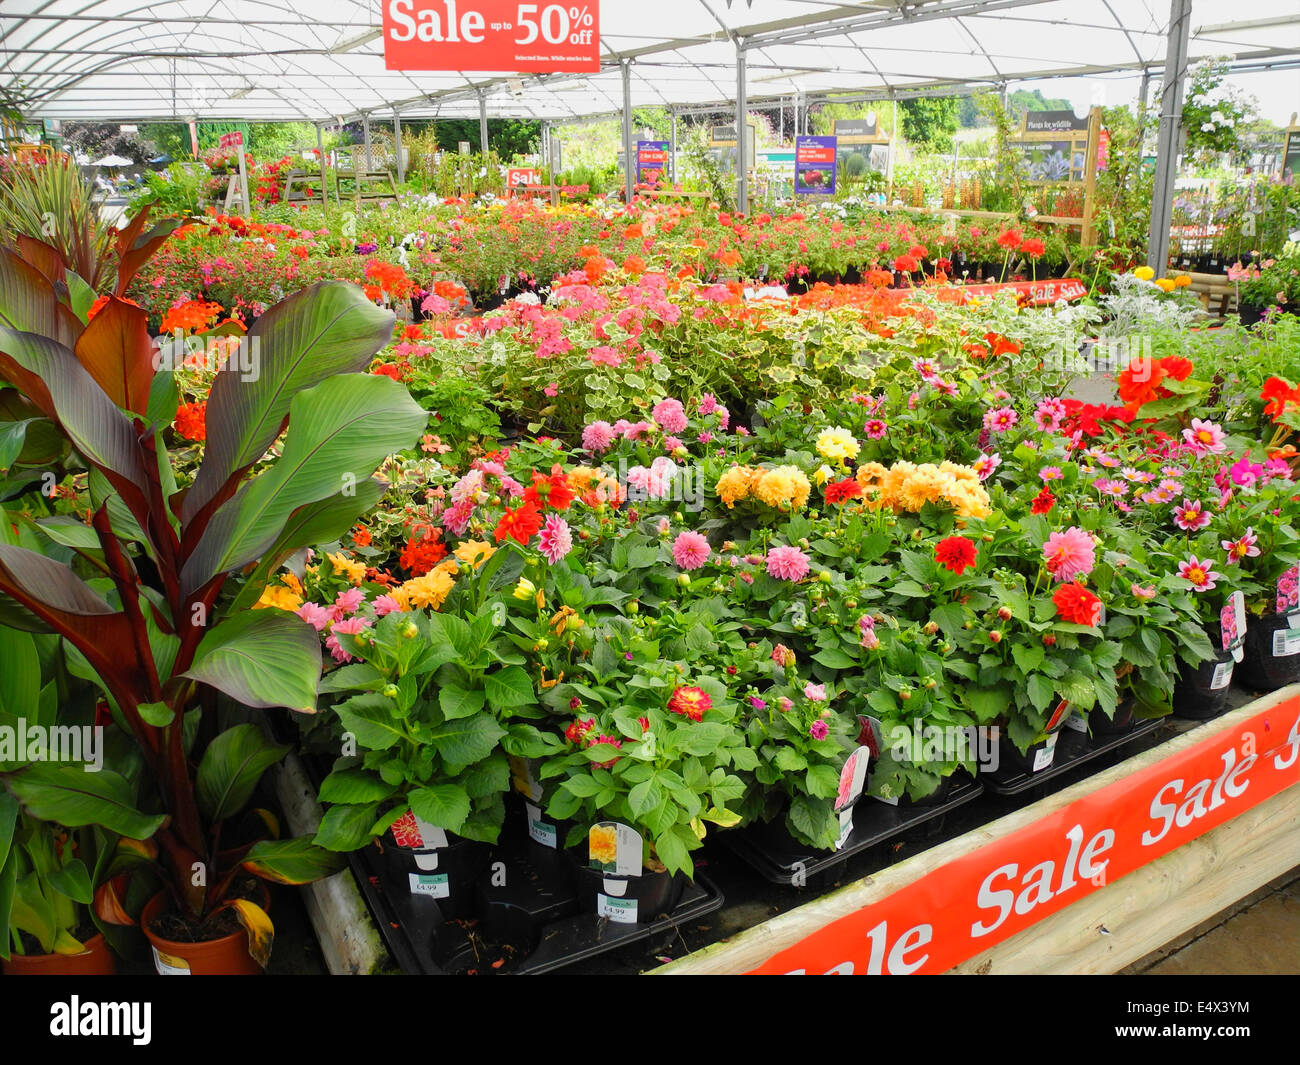 Centro giardino vendita metà prezzo surplus overstock le piante solo uso editoriale Foto Stock